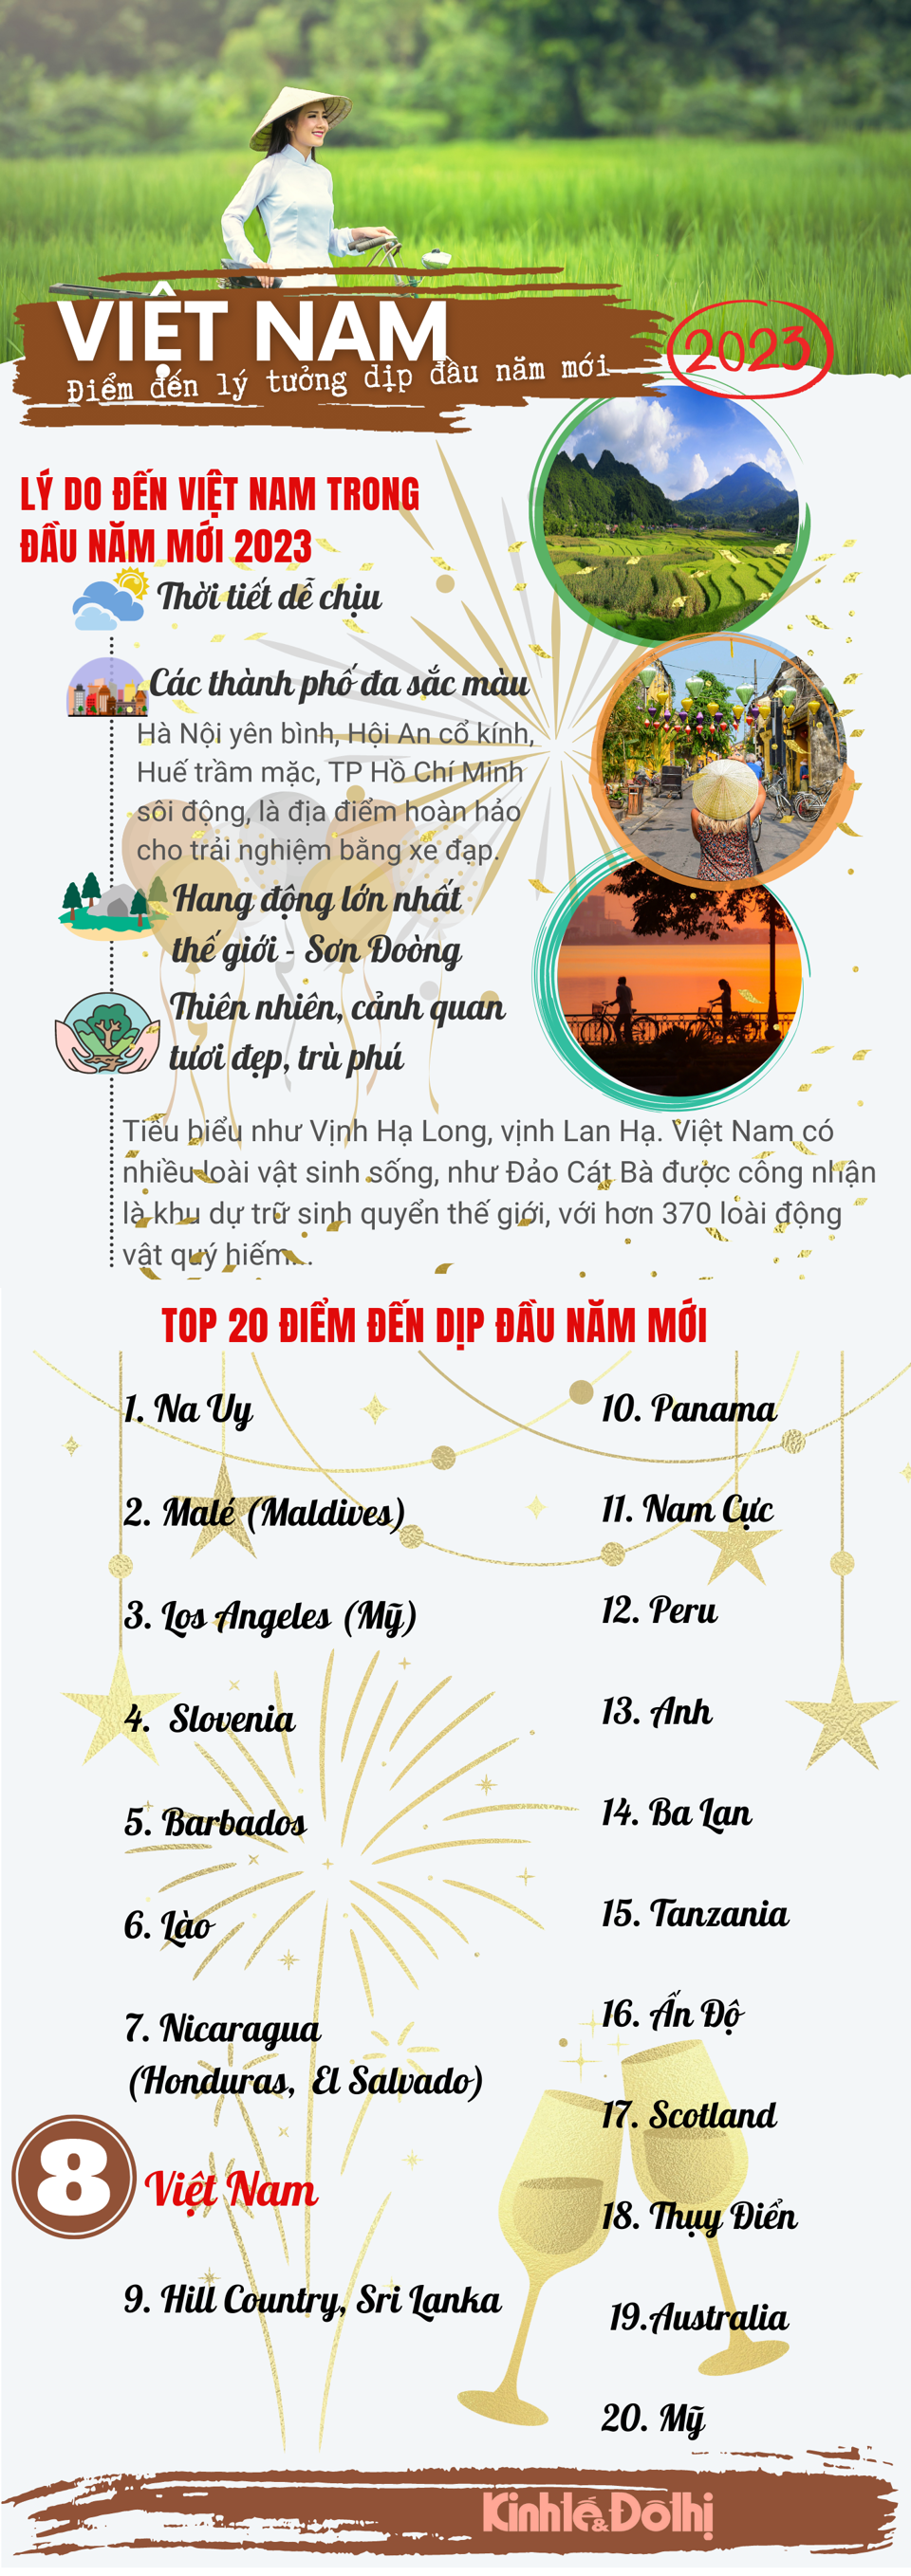 Việt Nam - Điểm đến hàng đầu thế giới dịp năm mới 2023 - Ảnh 1